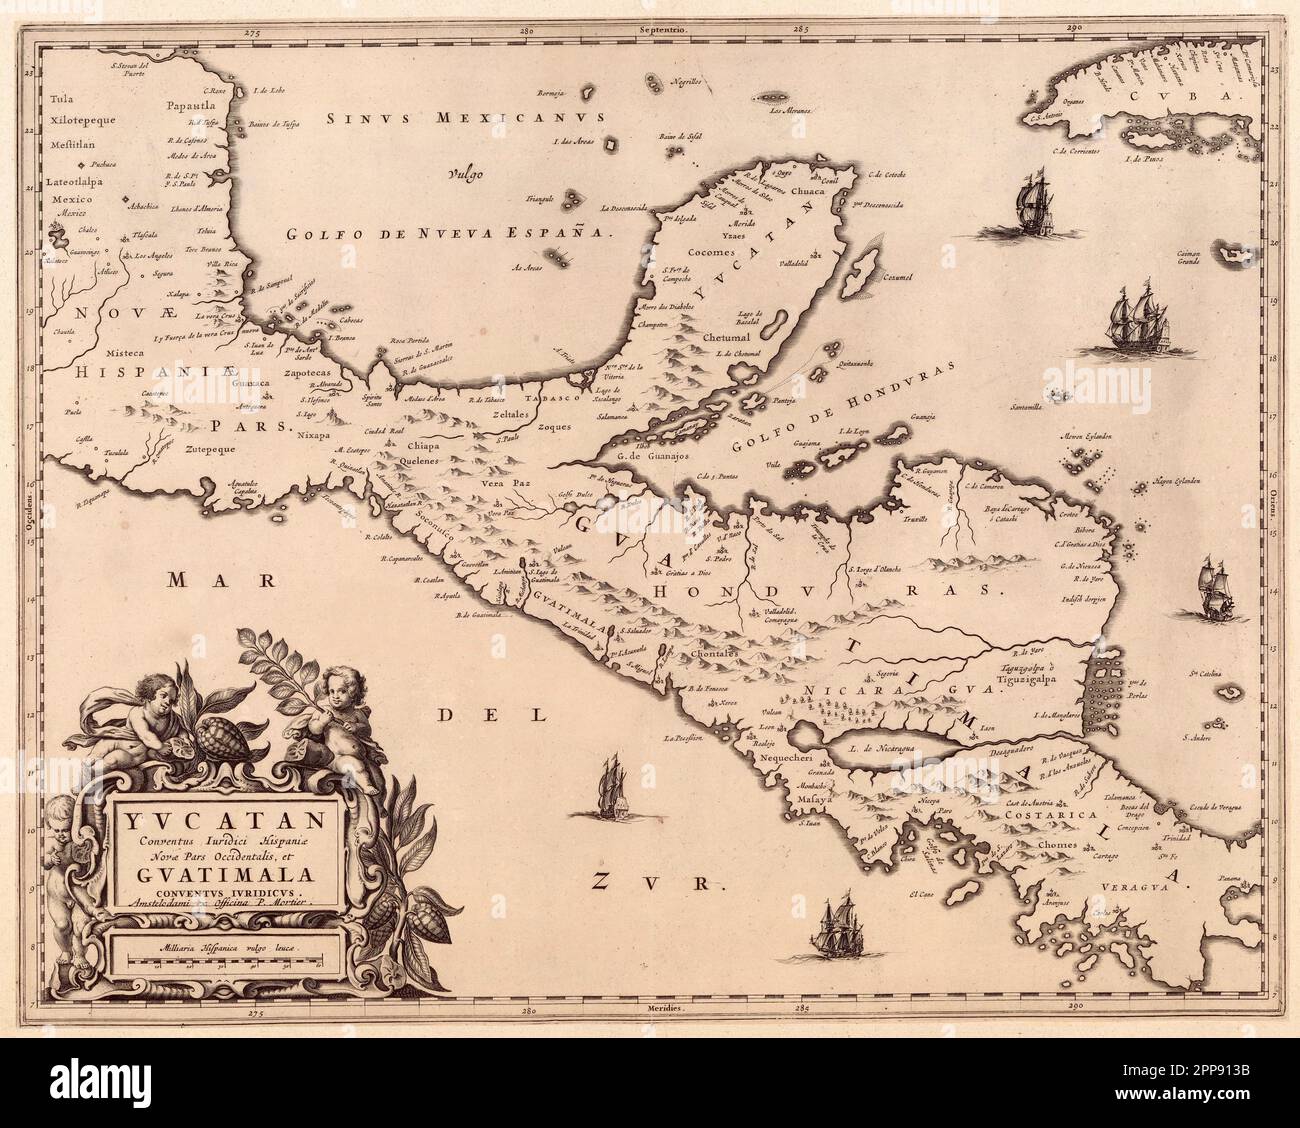 Antique map c. 1662 of the Yucatan Peninsula and Guatemala by Dutch cartographer Joan Blaeu (1596-1673) Stock Photo